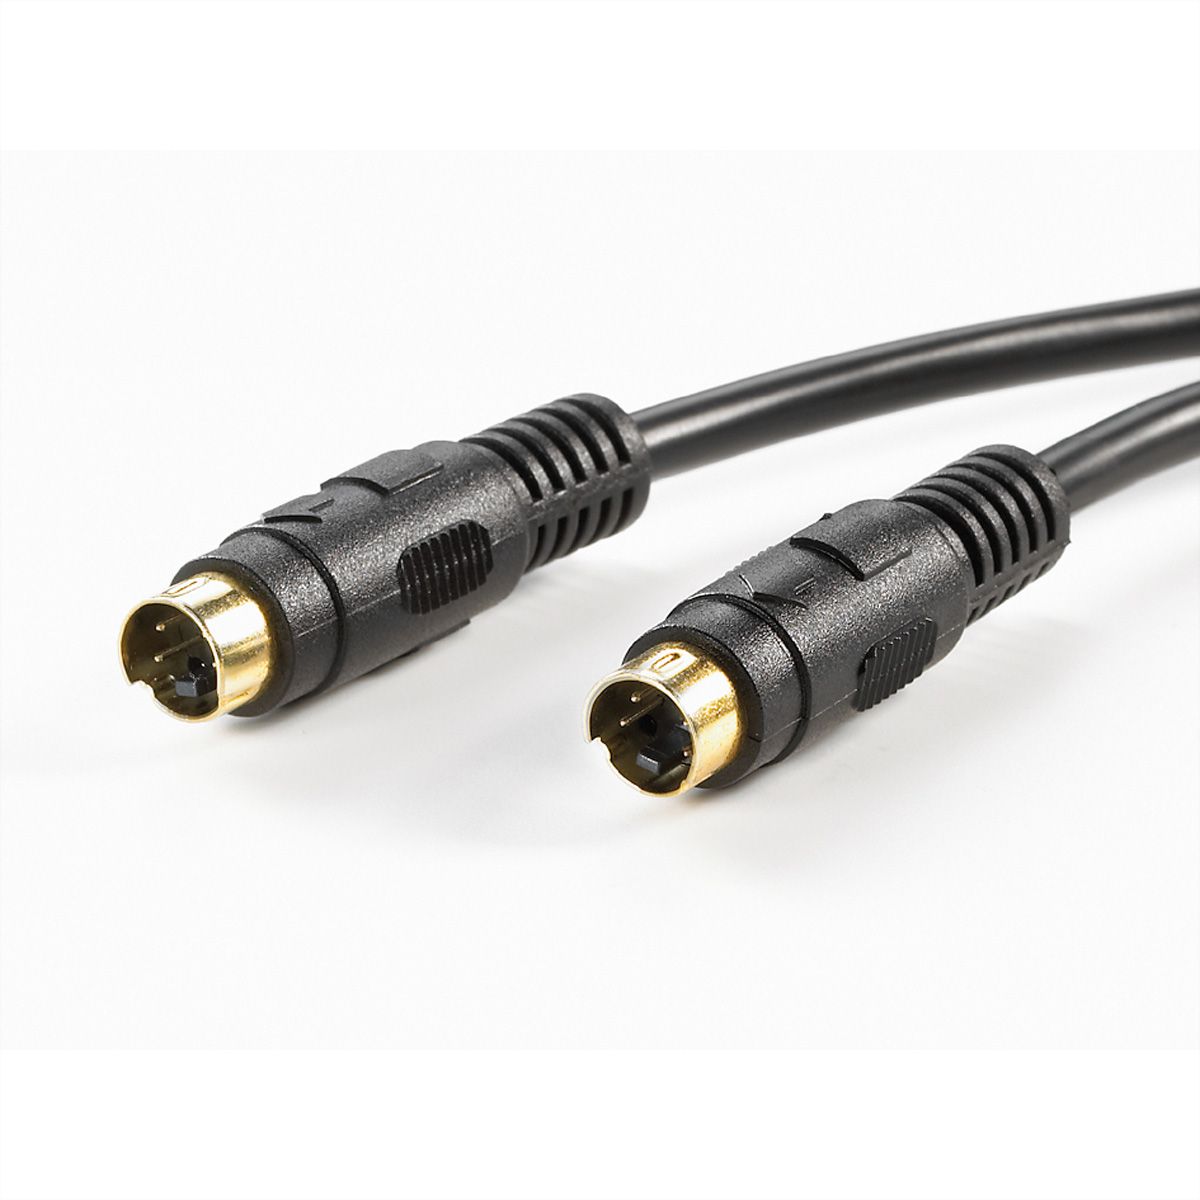 myndighed Hykler Hemmelighed VALUE S-Video Cable, black, 3 m - SECOMP International AG